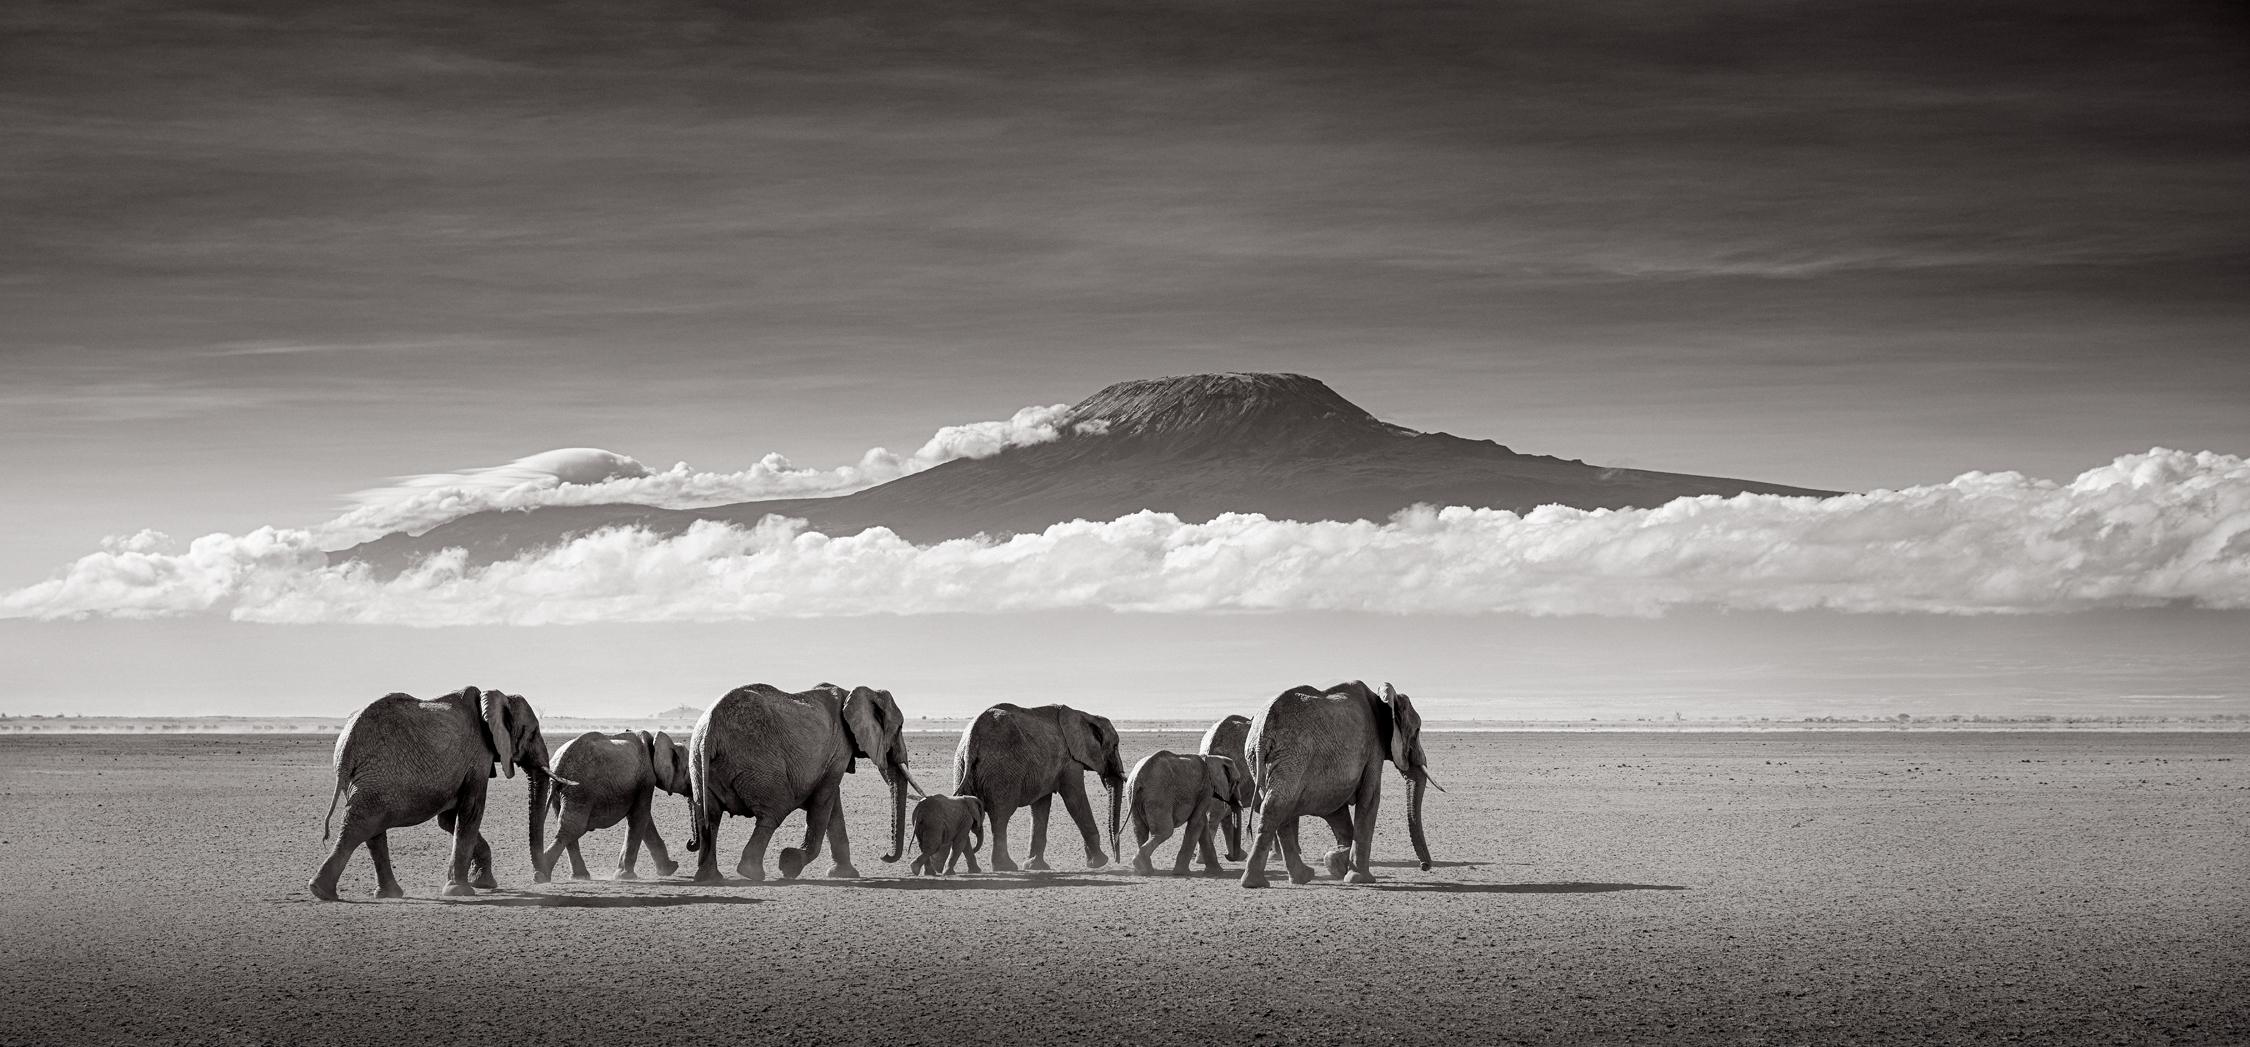 Black and White Photograph Drew Doggett - Éléphants en train de marcher à travers le lac sec avec le mont Kilimanjaro comme toile de fond